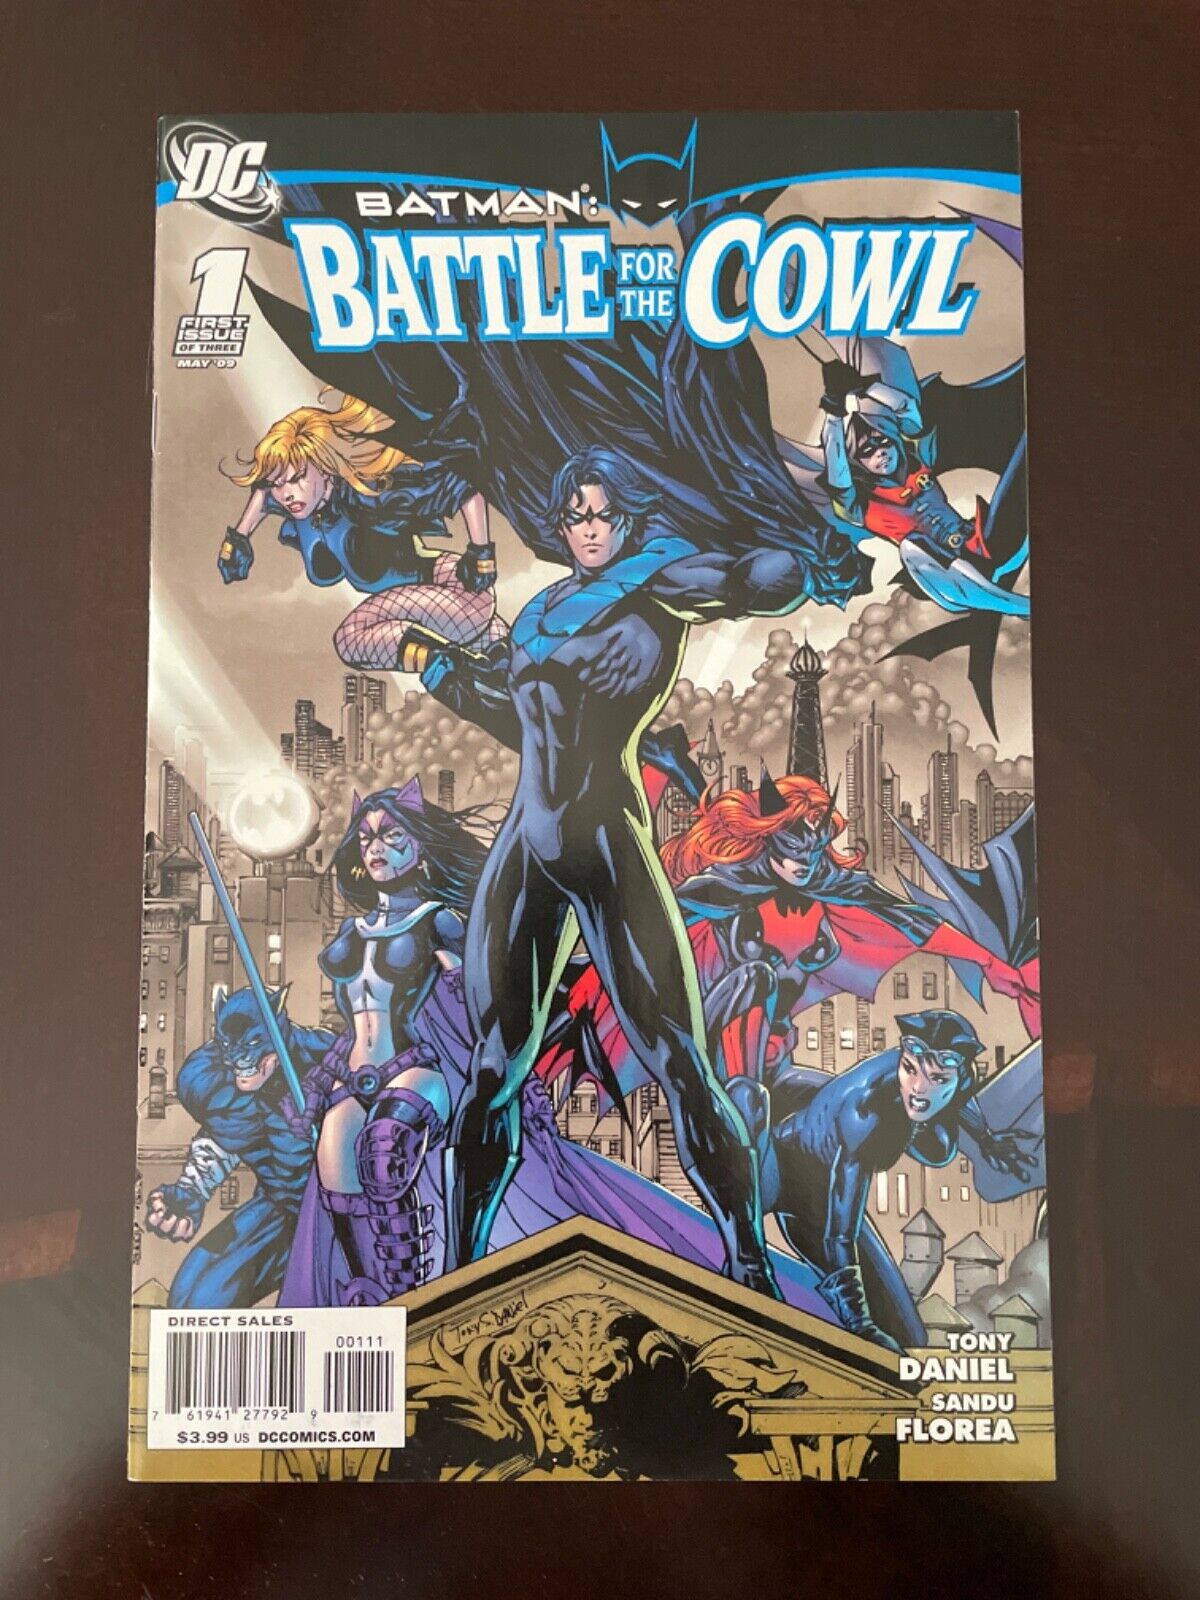 Batman #1 Vol 1 (DC, 2009) VF+